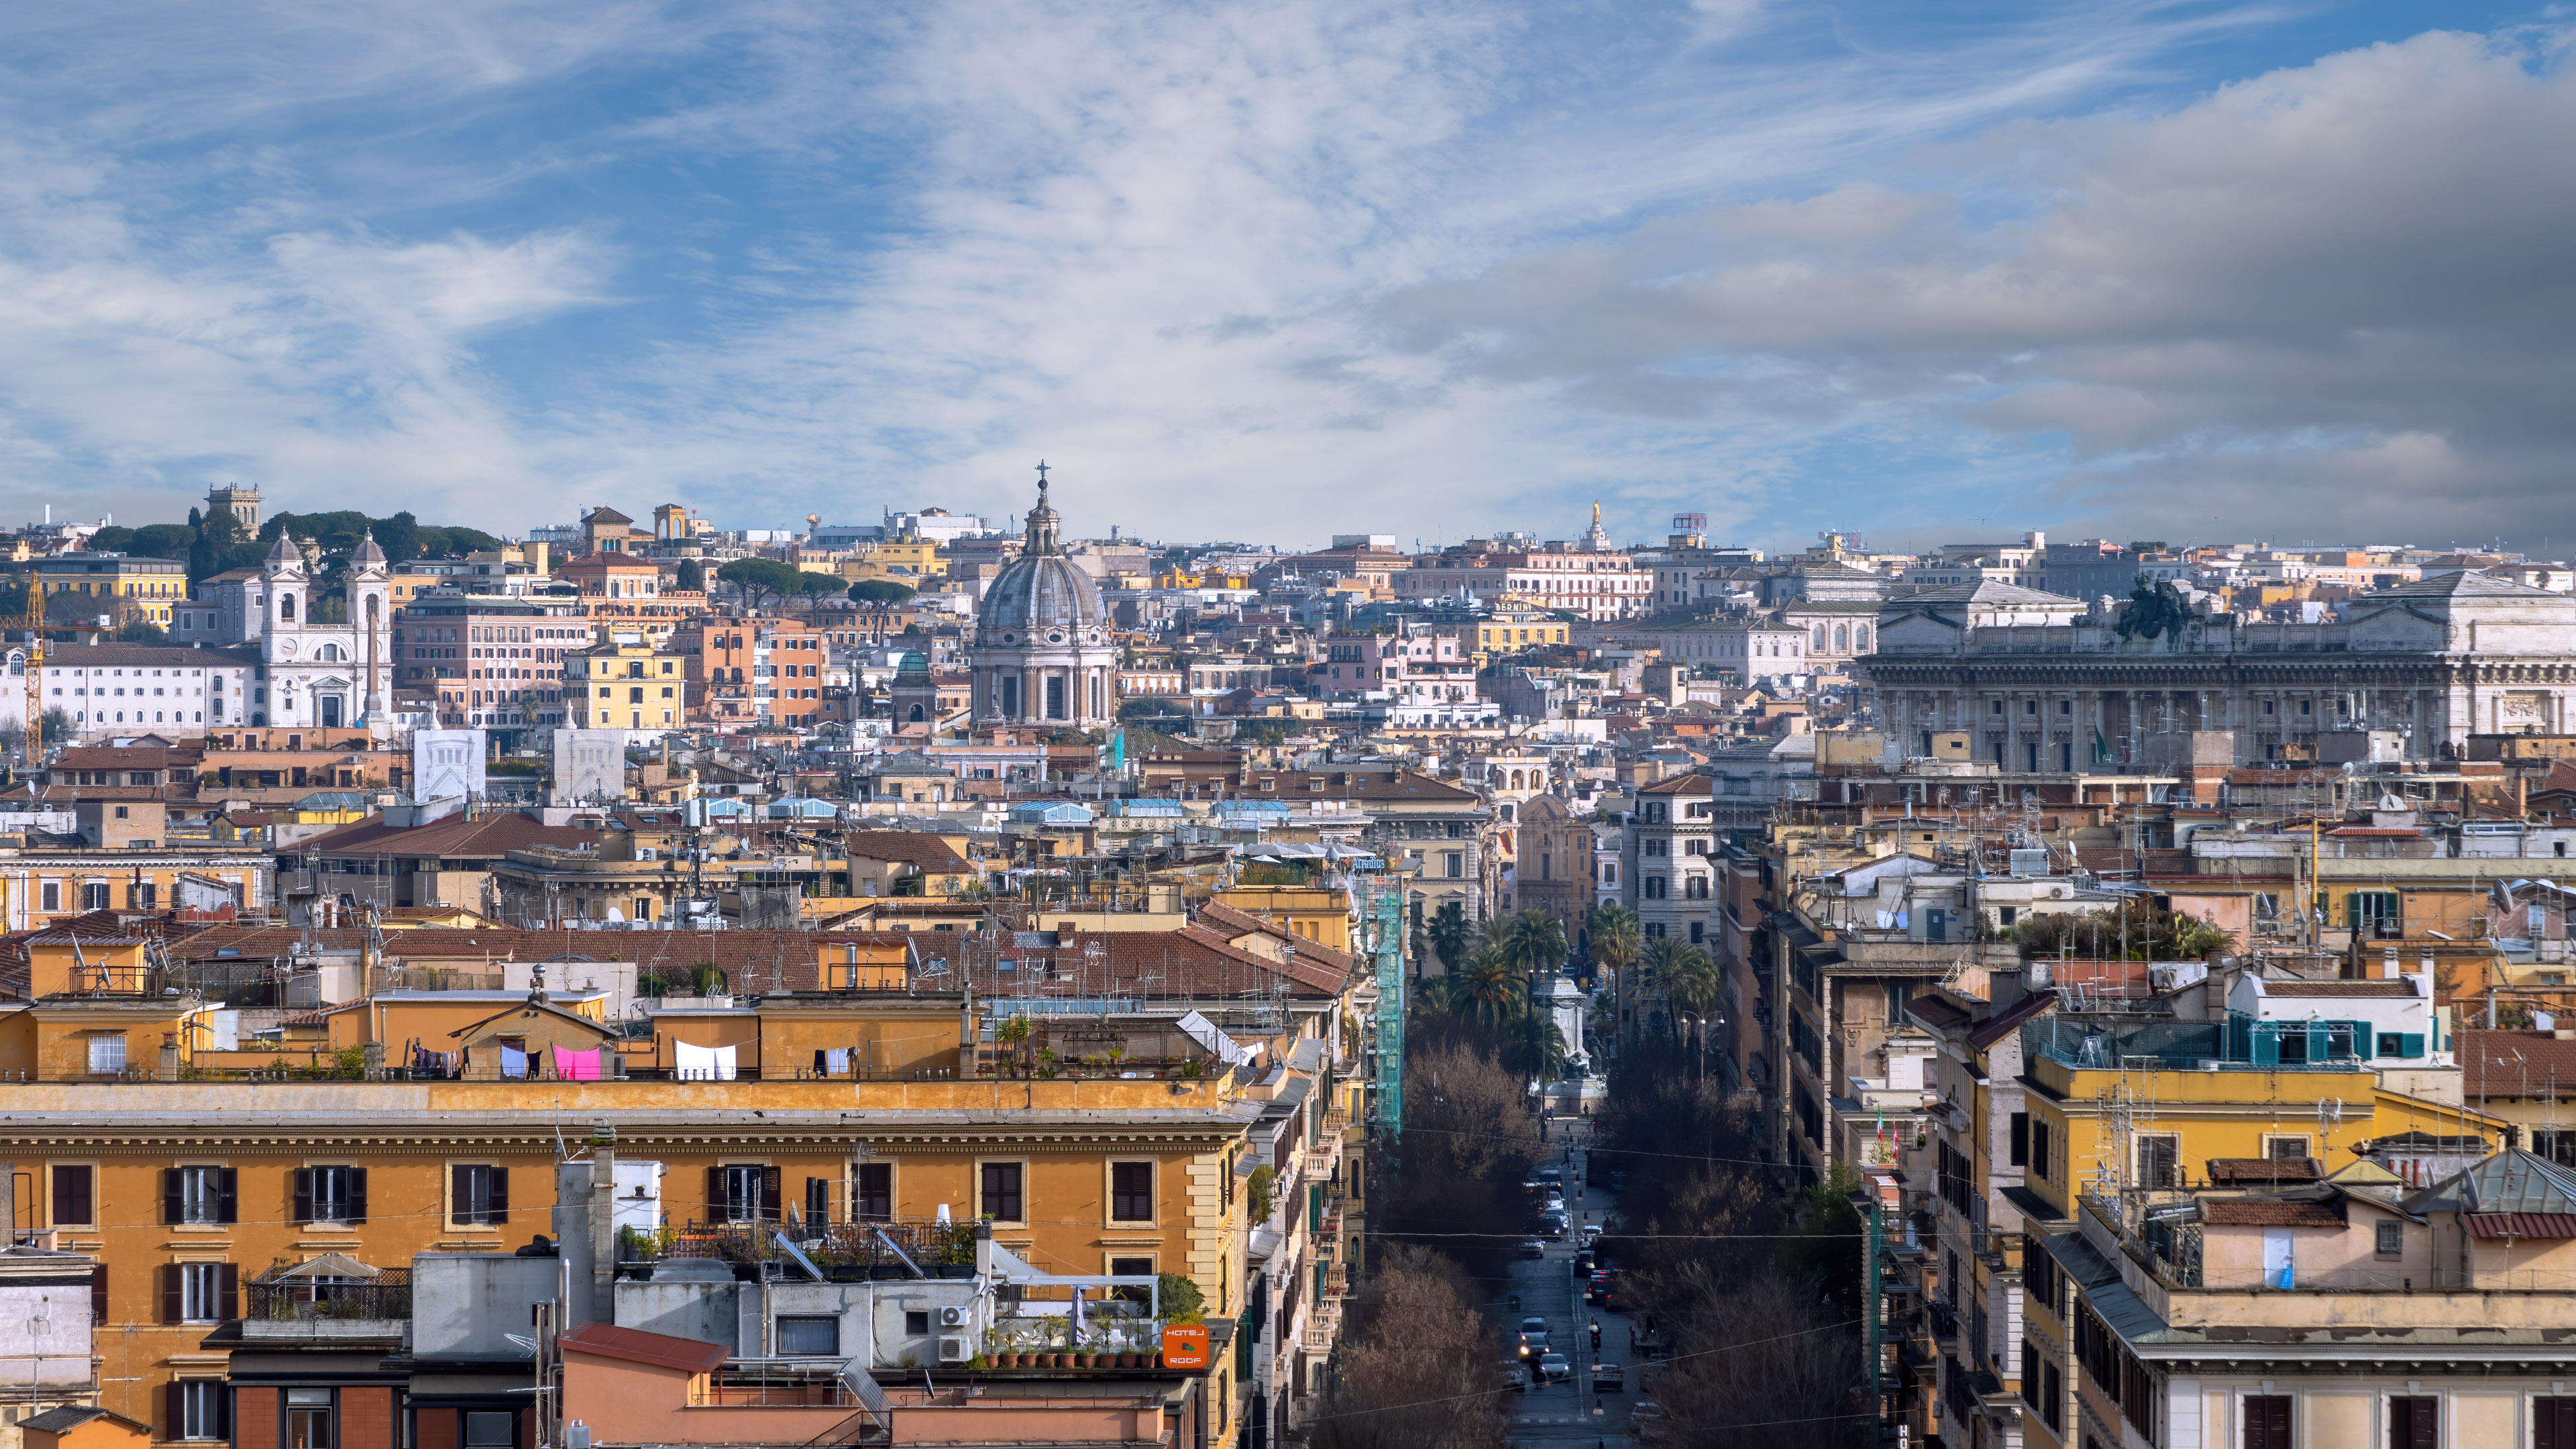 A colorful cityscape wallpaper of Rome's urban landscape.